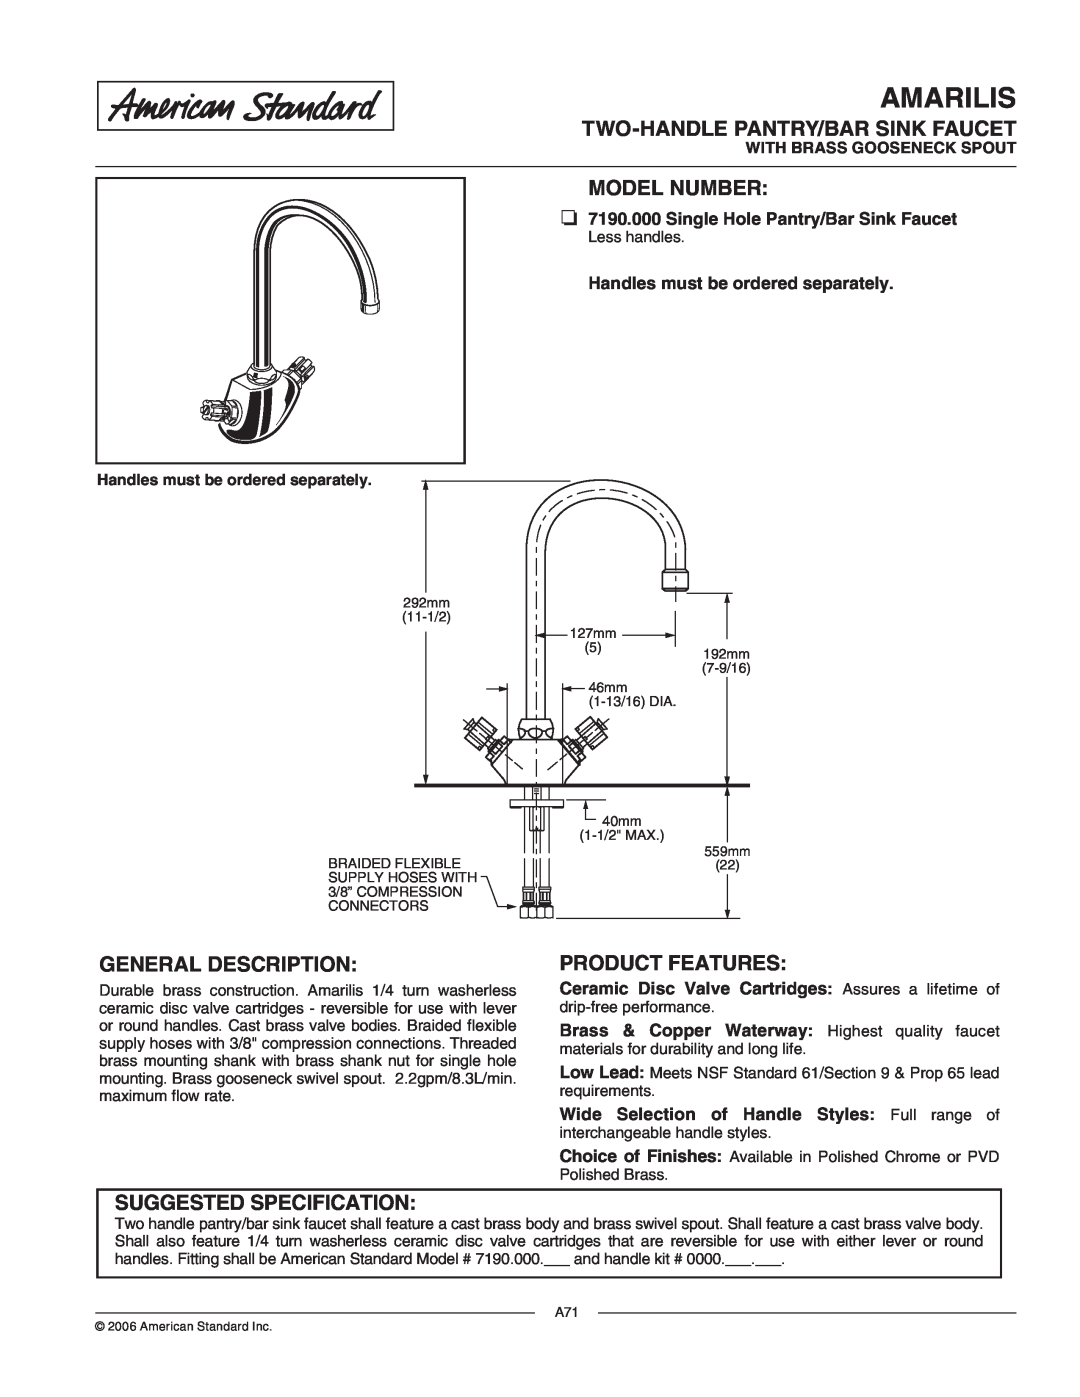 American Standard 719.000 manual Amarilis, Two-Handlepantry/Bar Sink Faucet, Model Number, General Description 